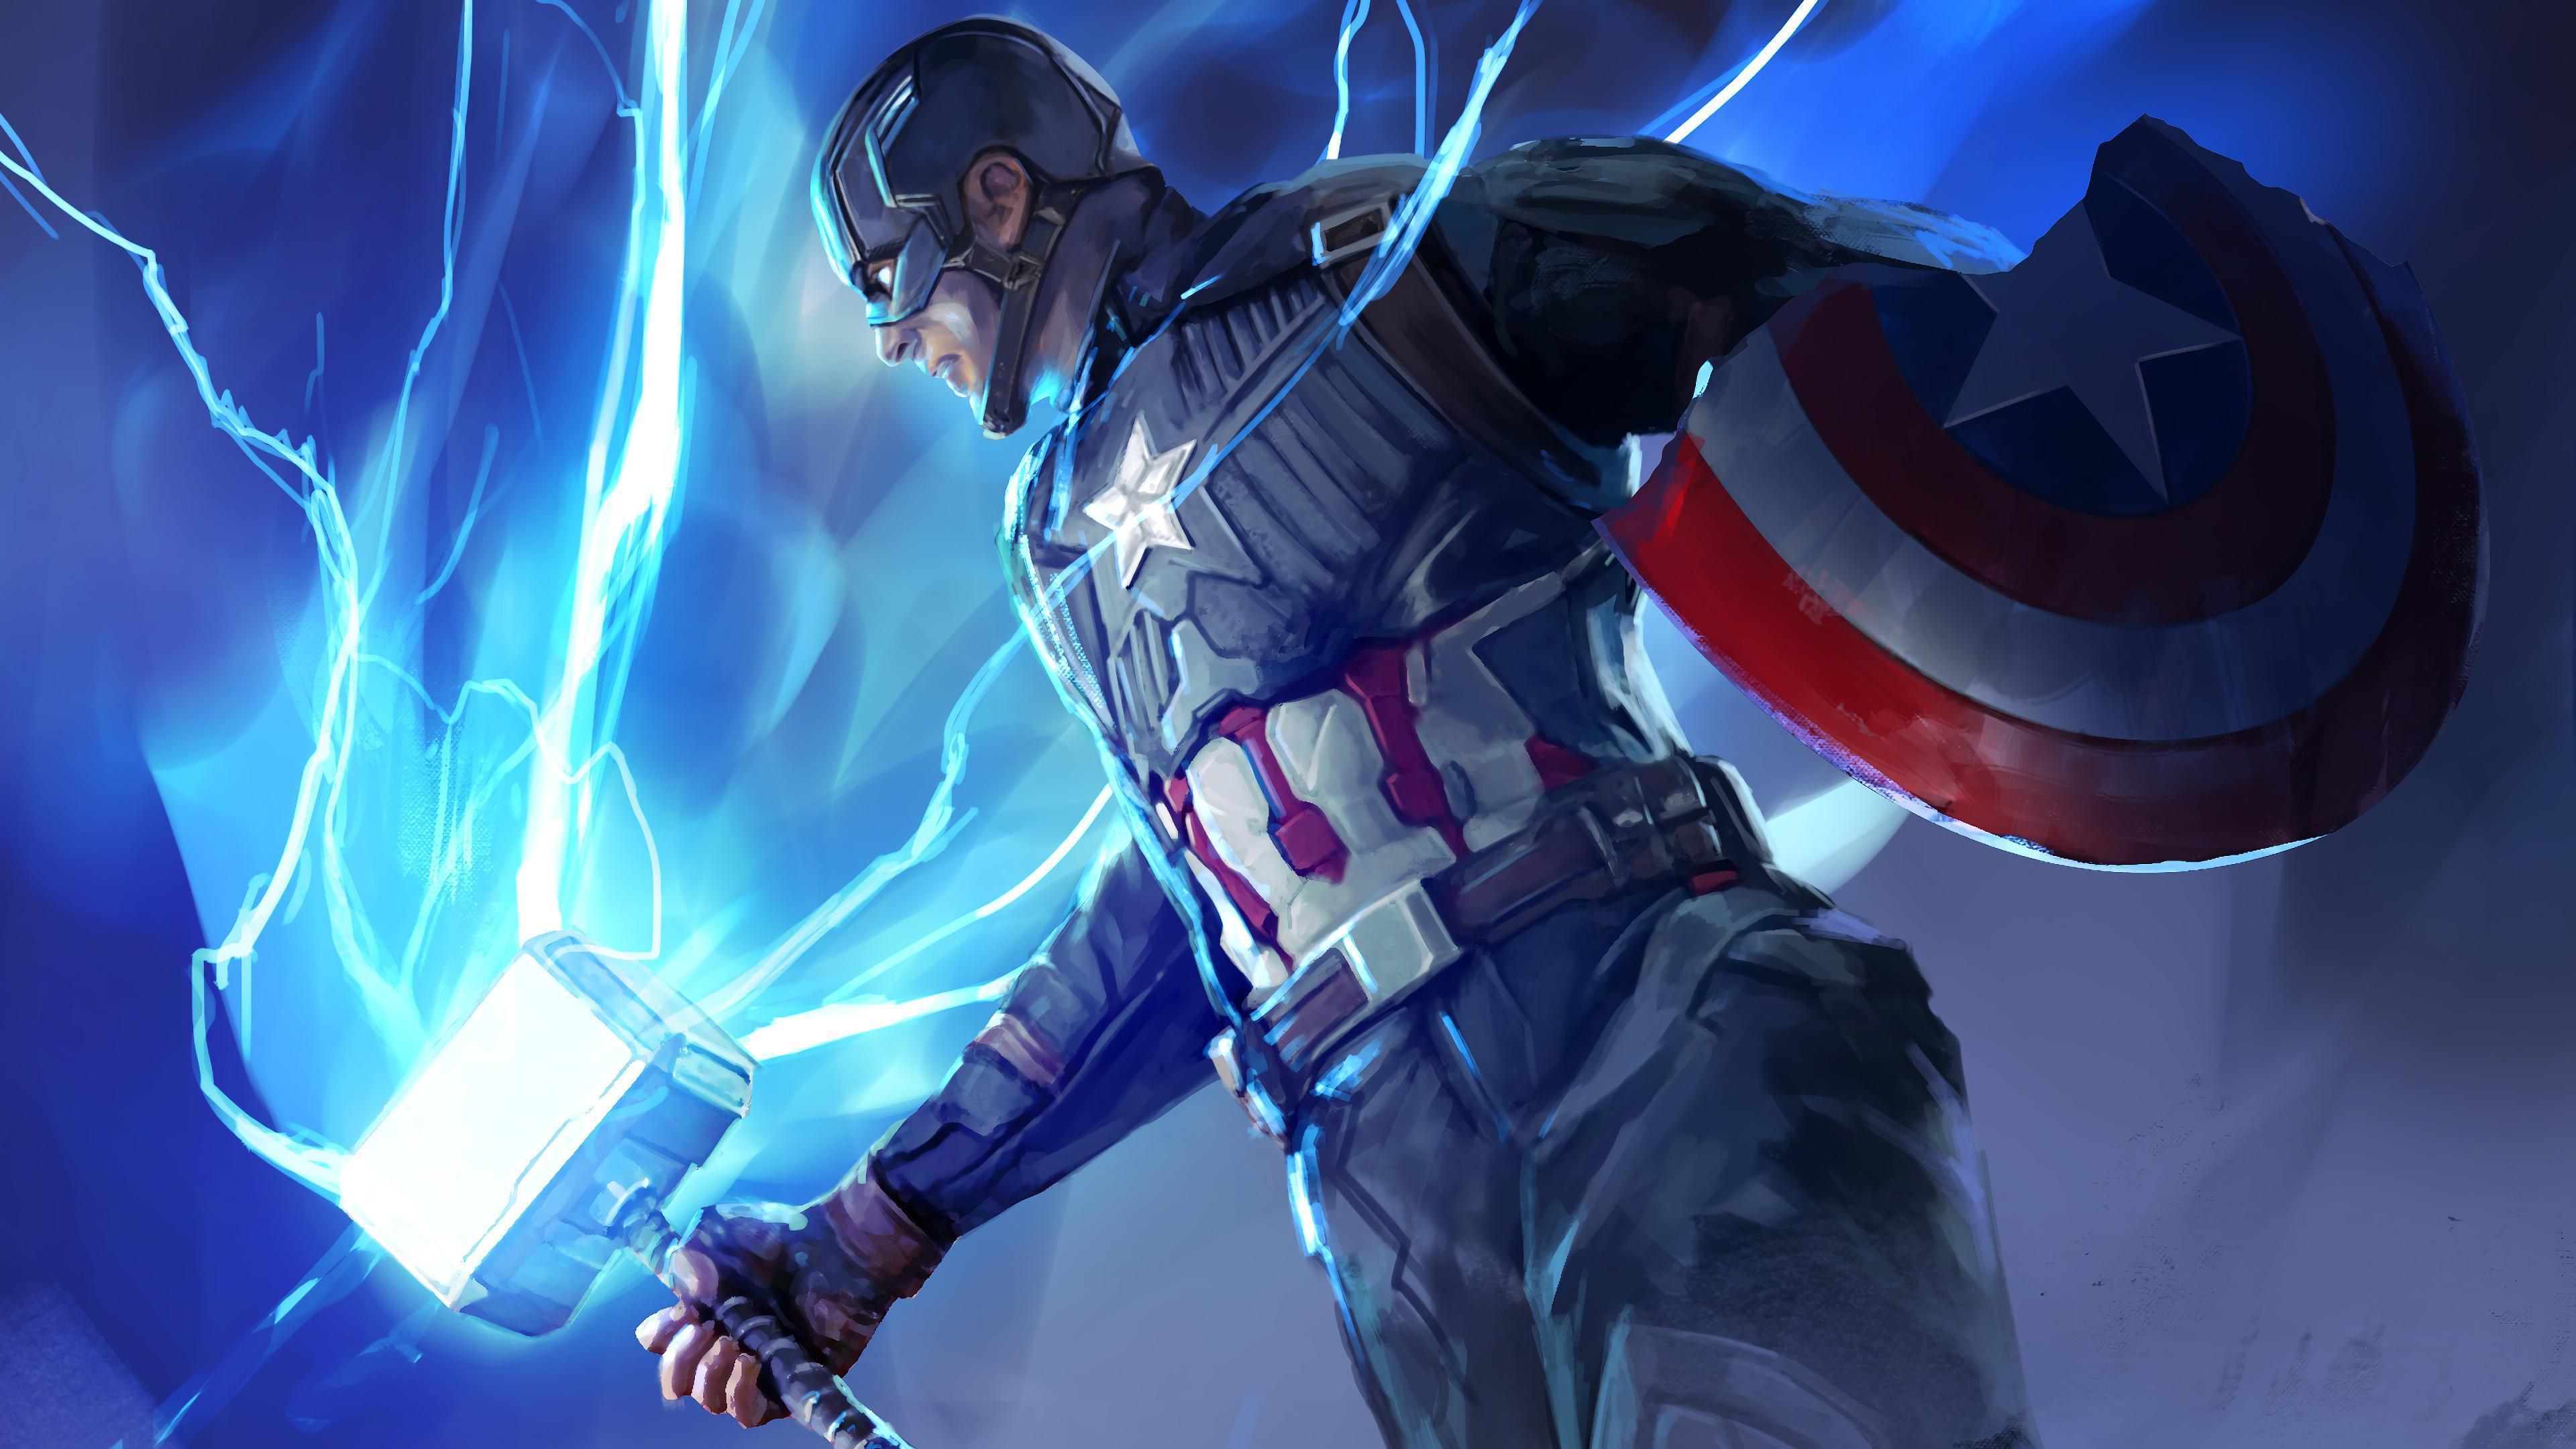 HD wallpaper, Captain America, Avengers Endgame, 4K, Mjolnir, Hammer, Lightning